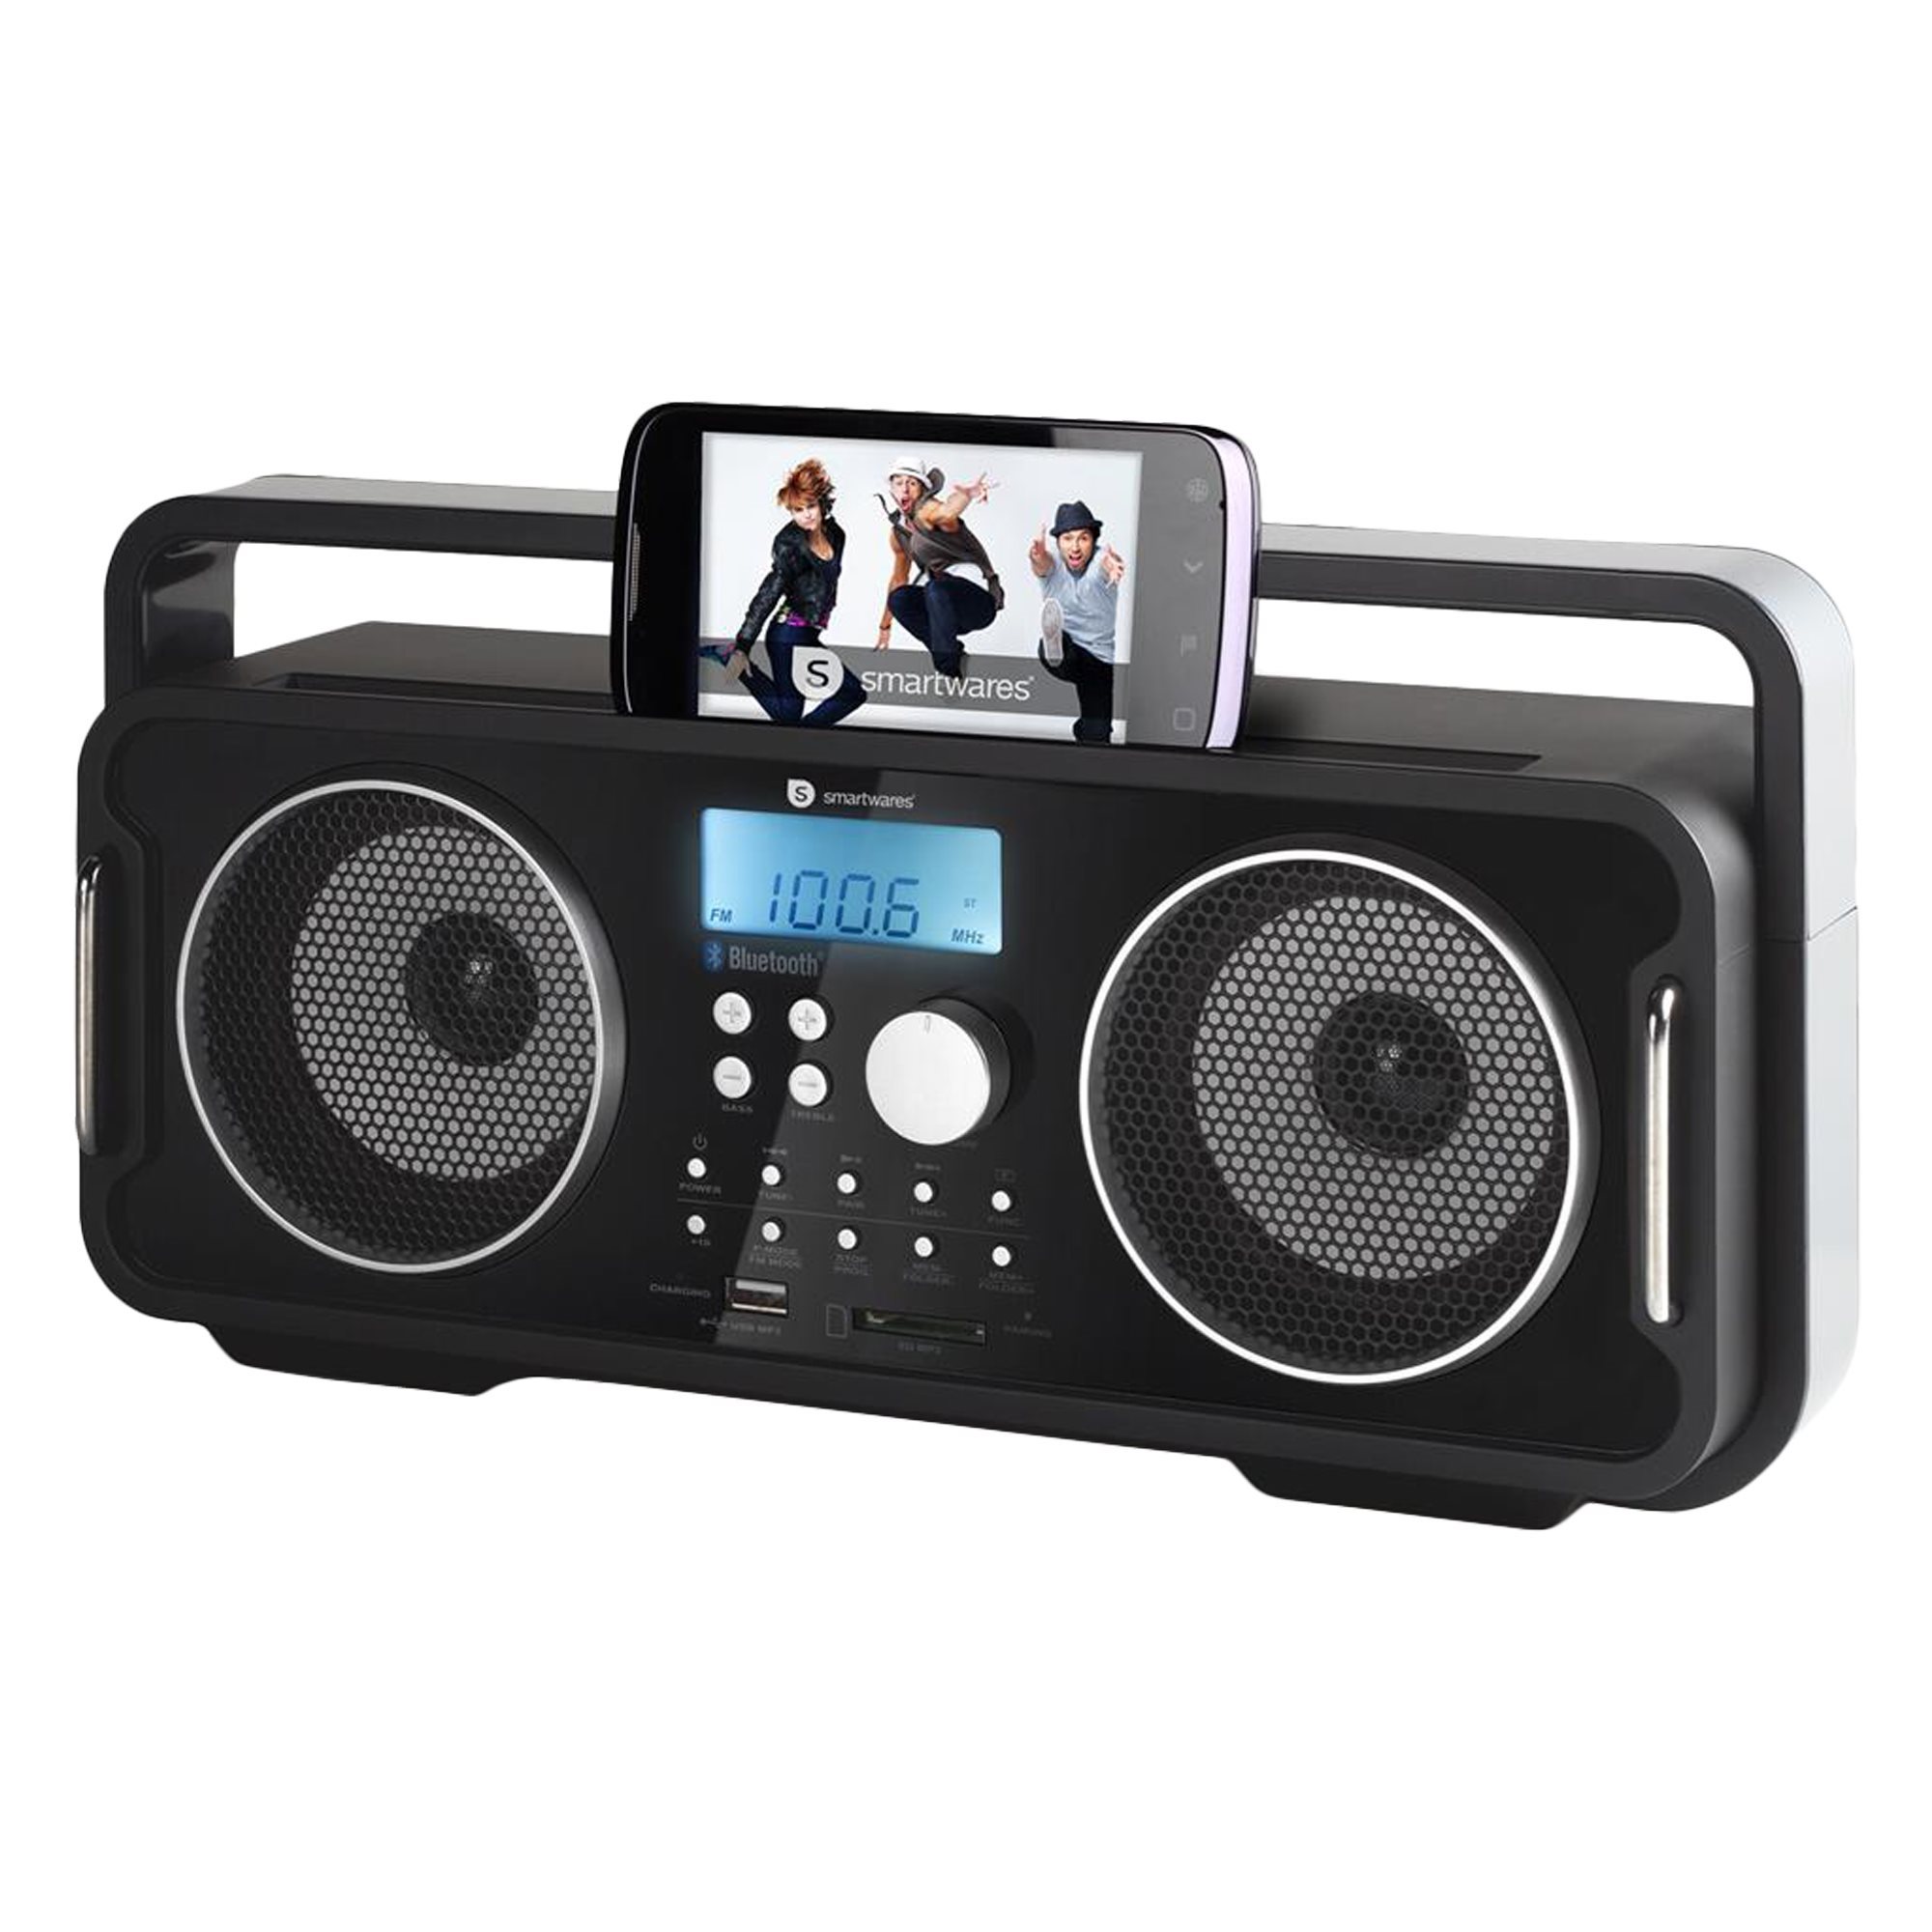 Portable radio - AudioSonic | KitchenShop